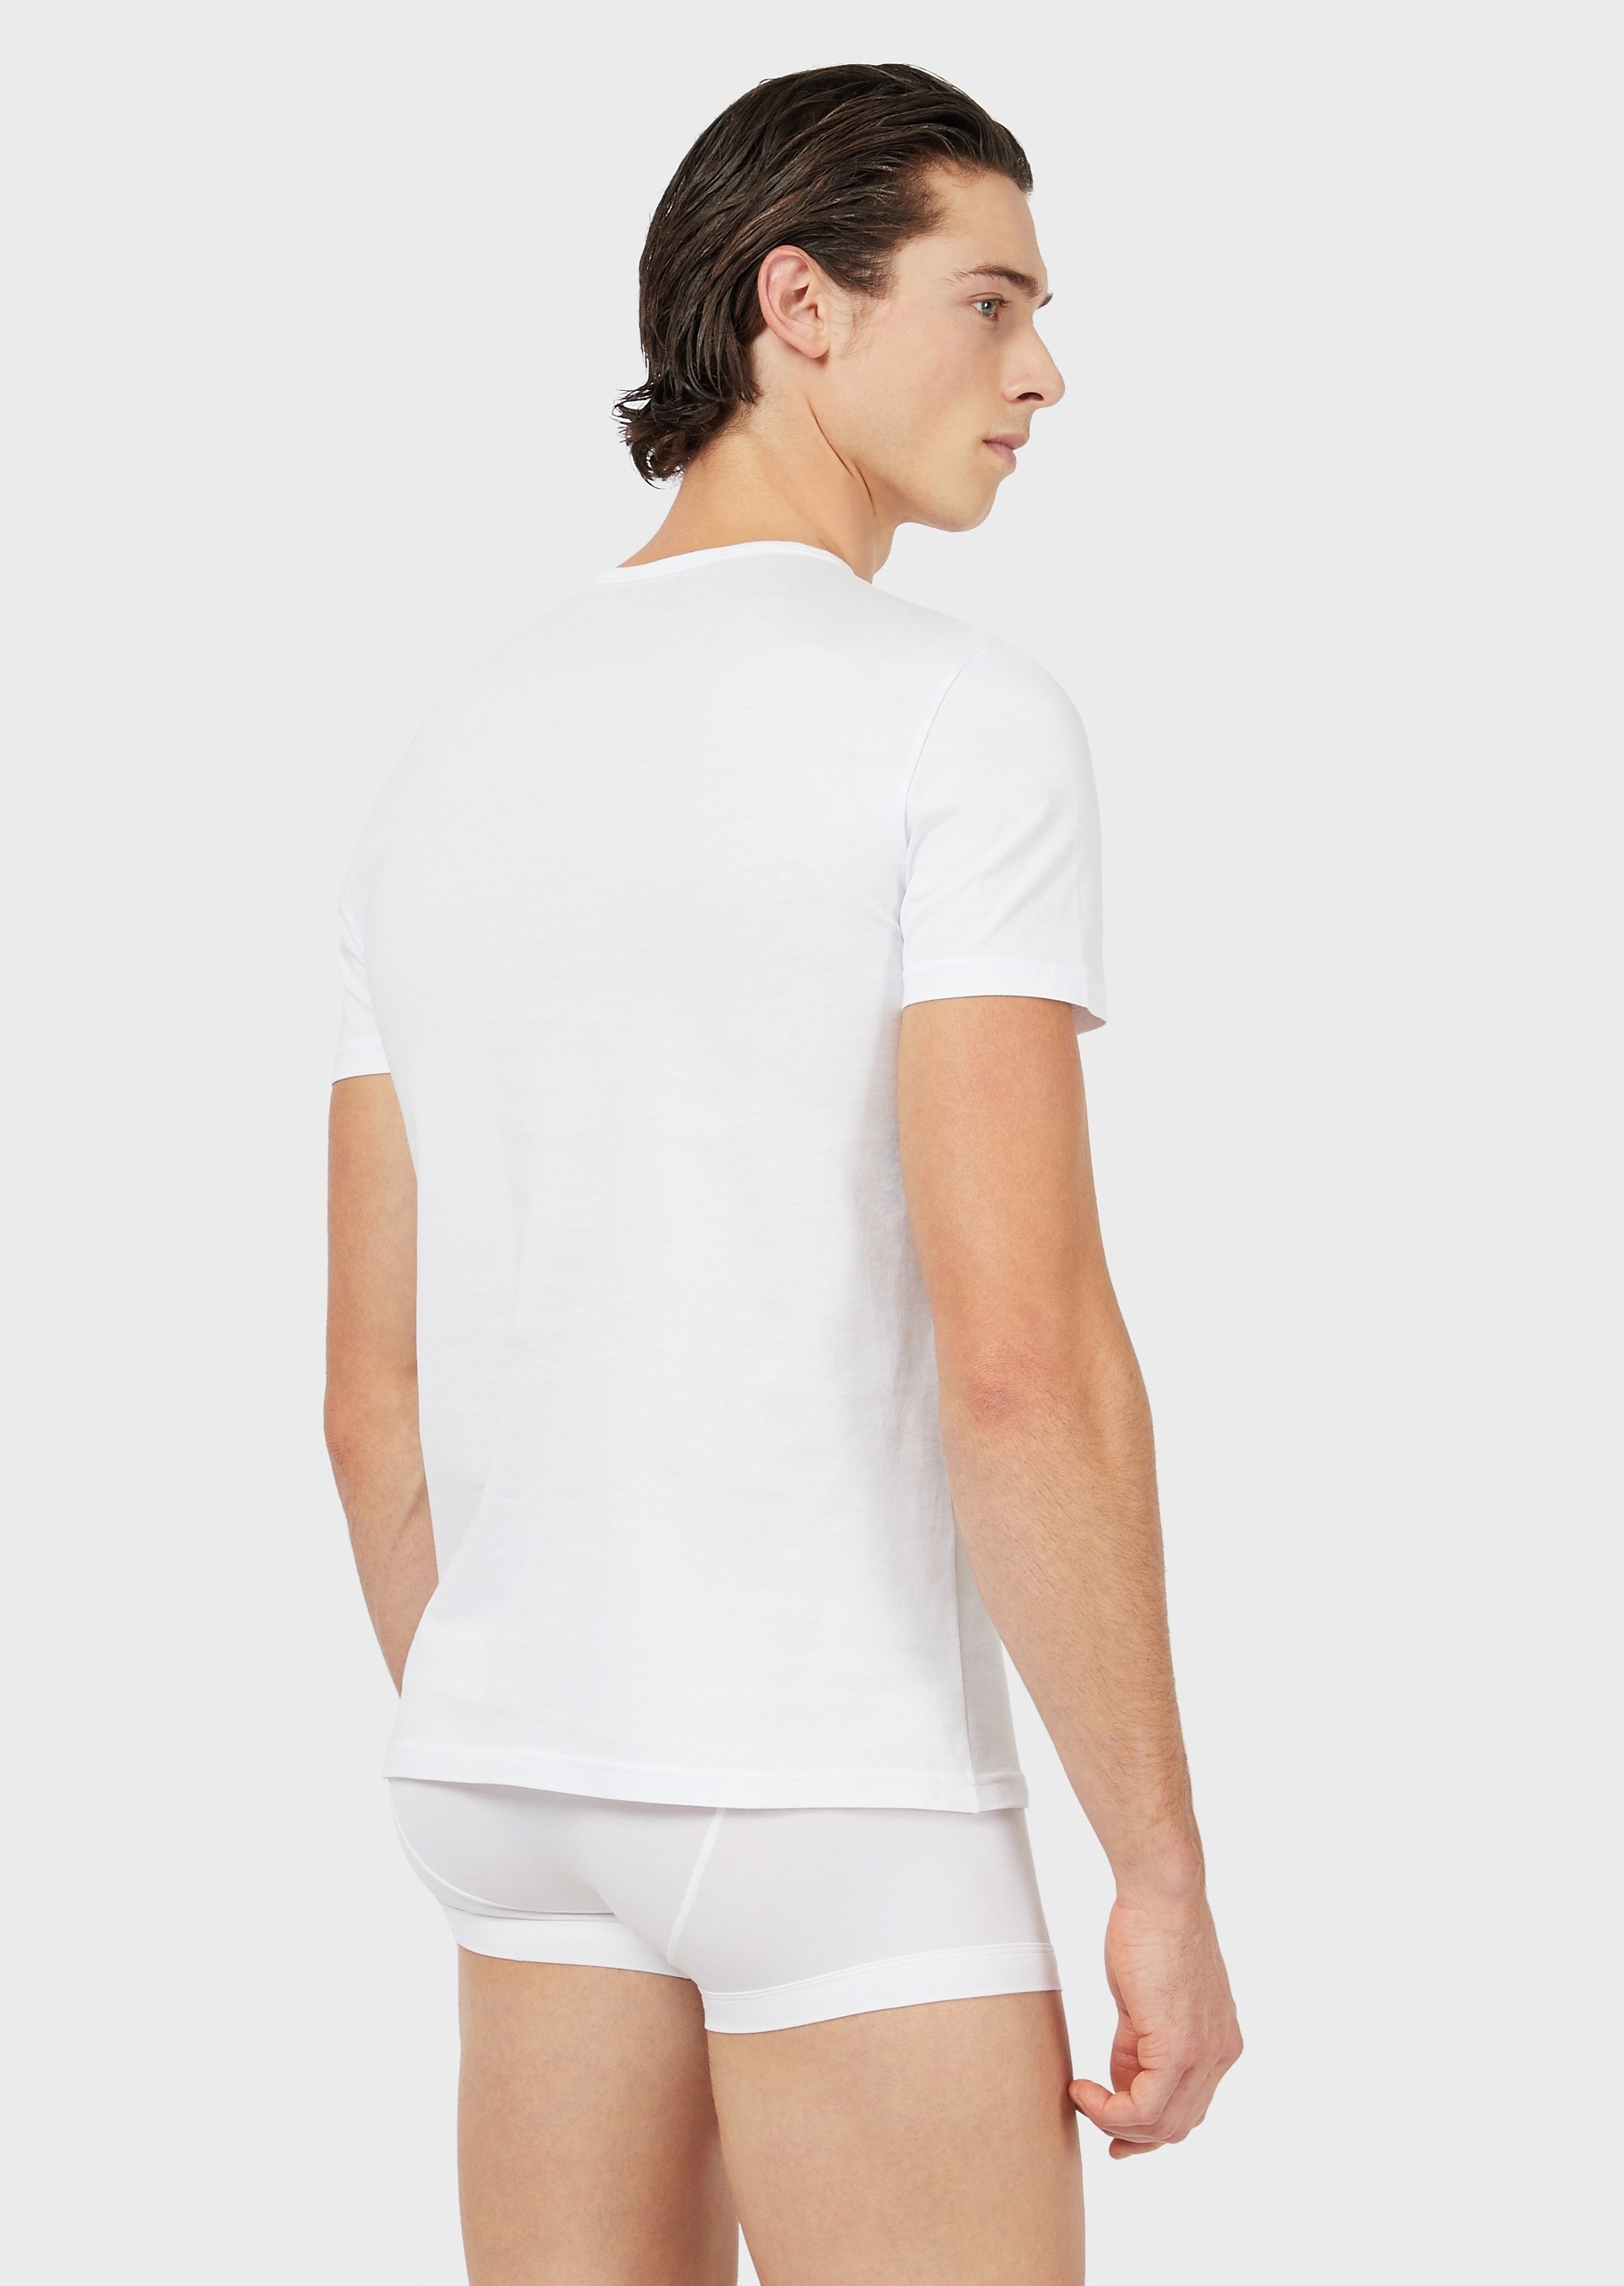 Emporio Armani 男士全棉合身短袖圆领两件装打底T恤